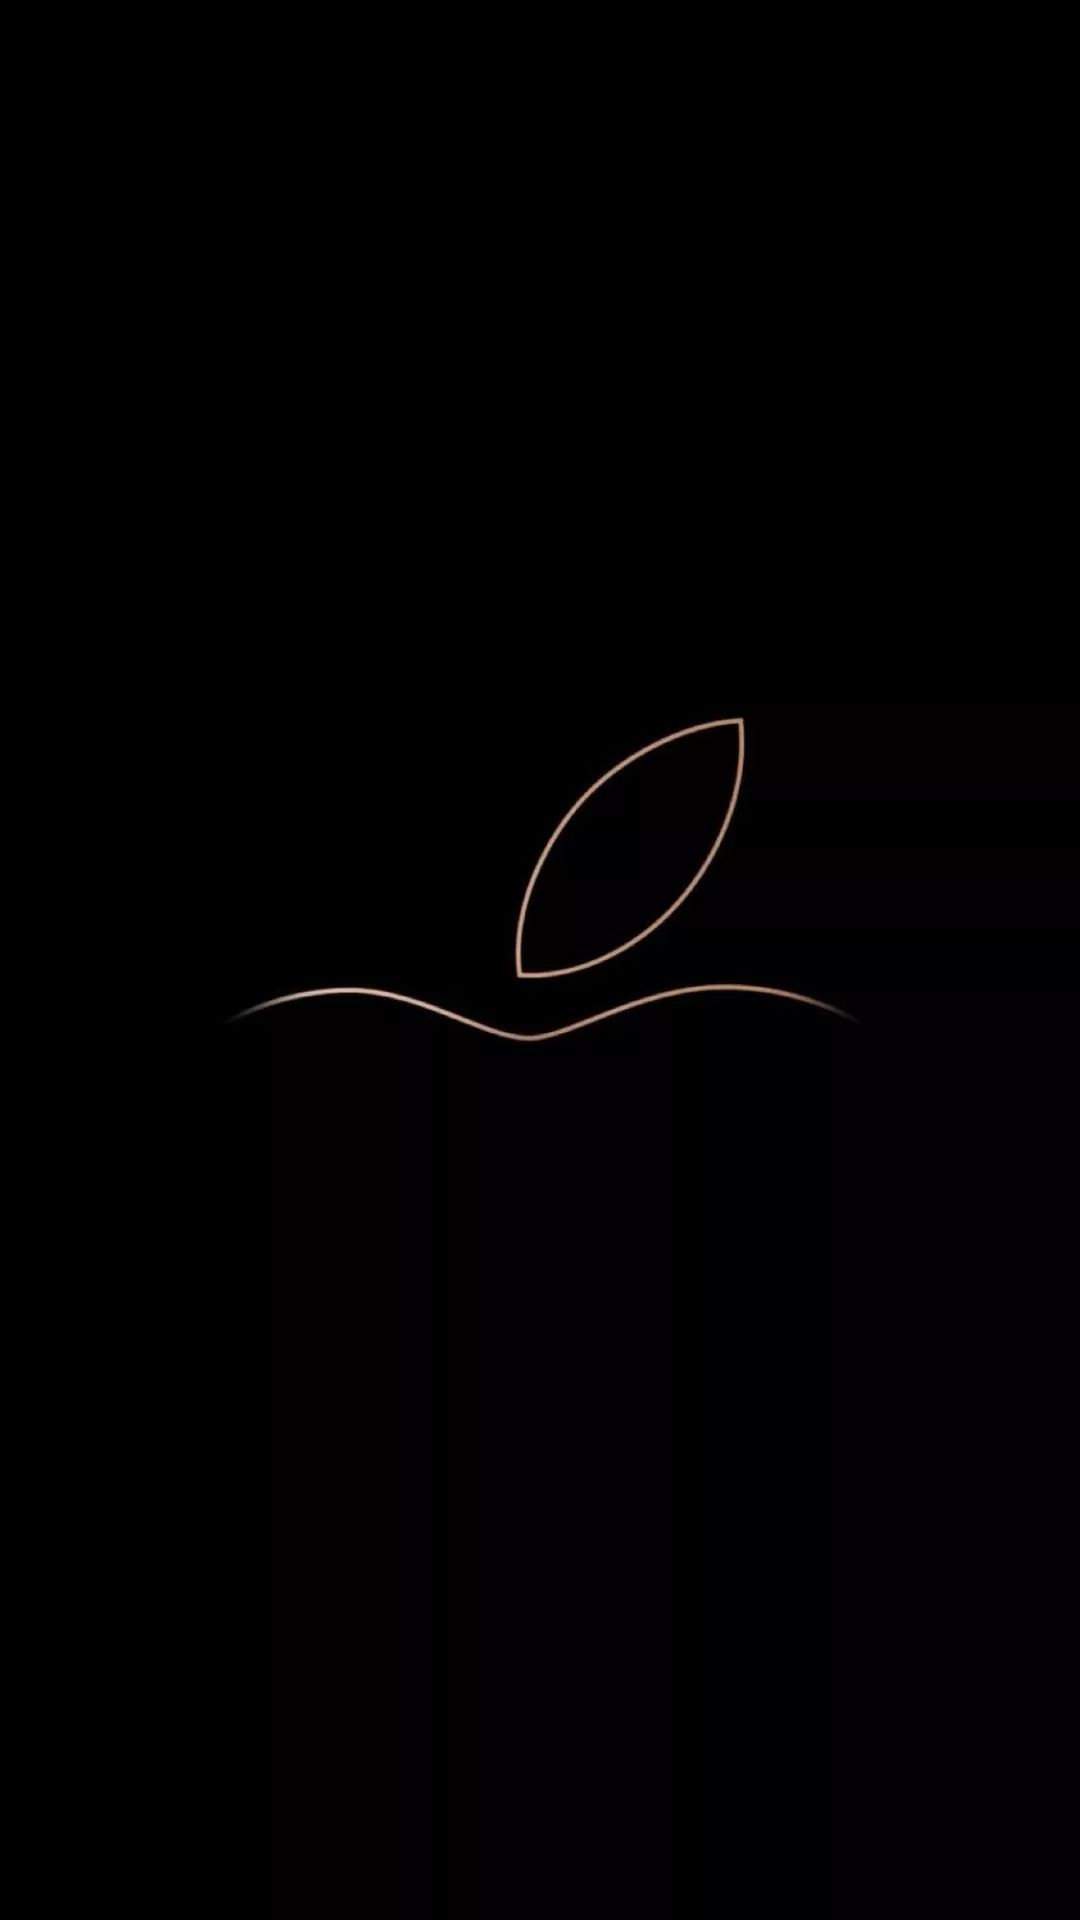 非全面屏简单大气的苹果logo壁纸